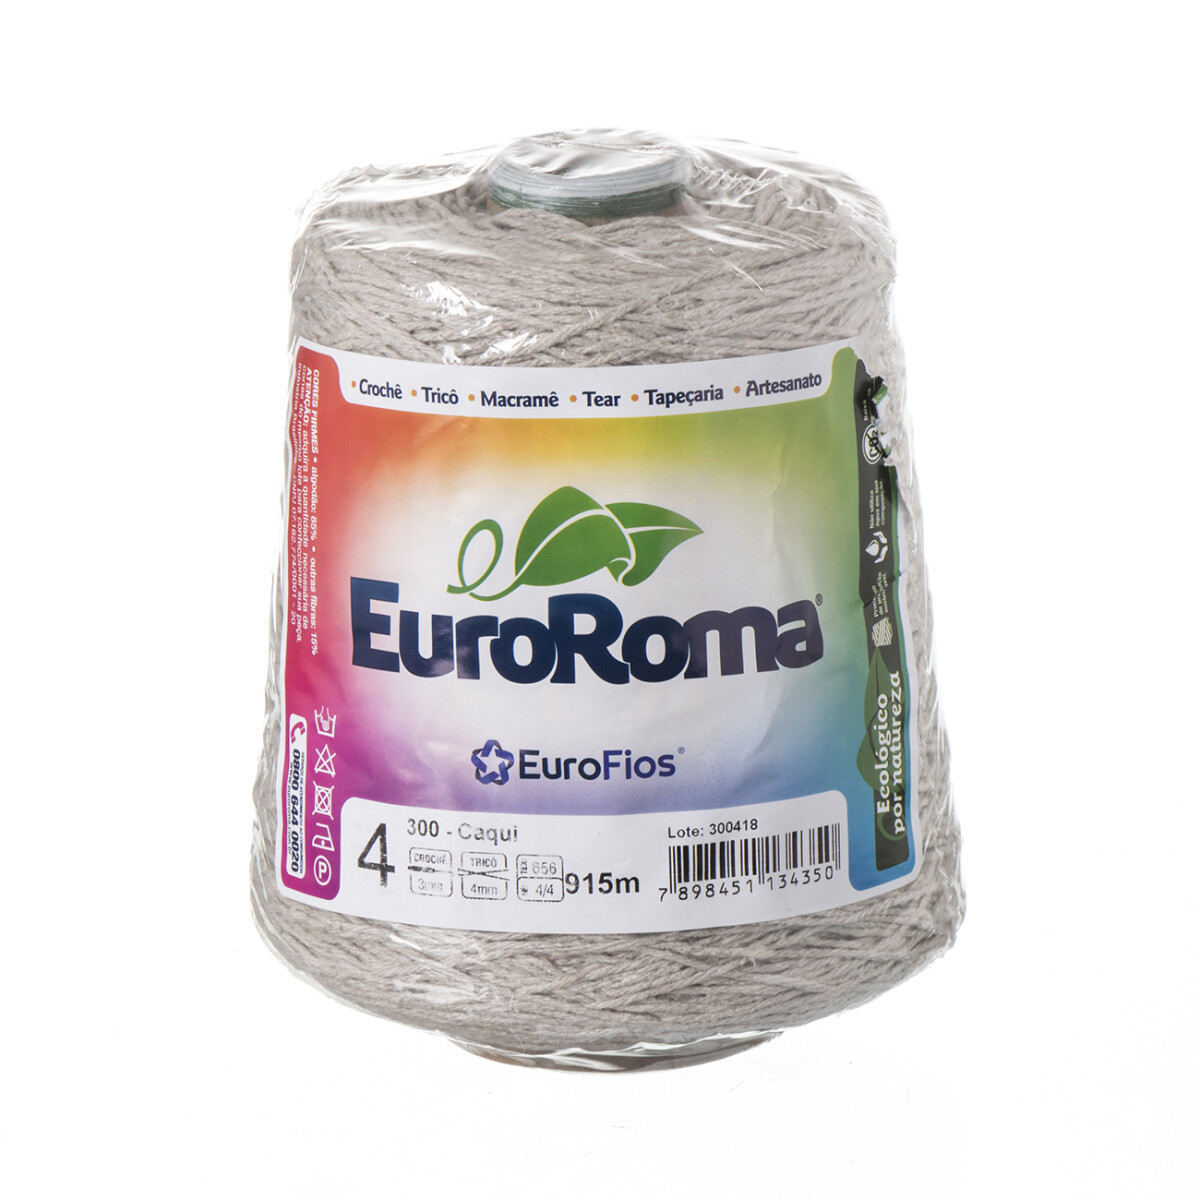 Euroroma algodón Colorido manualidades - caqui 